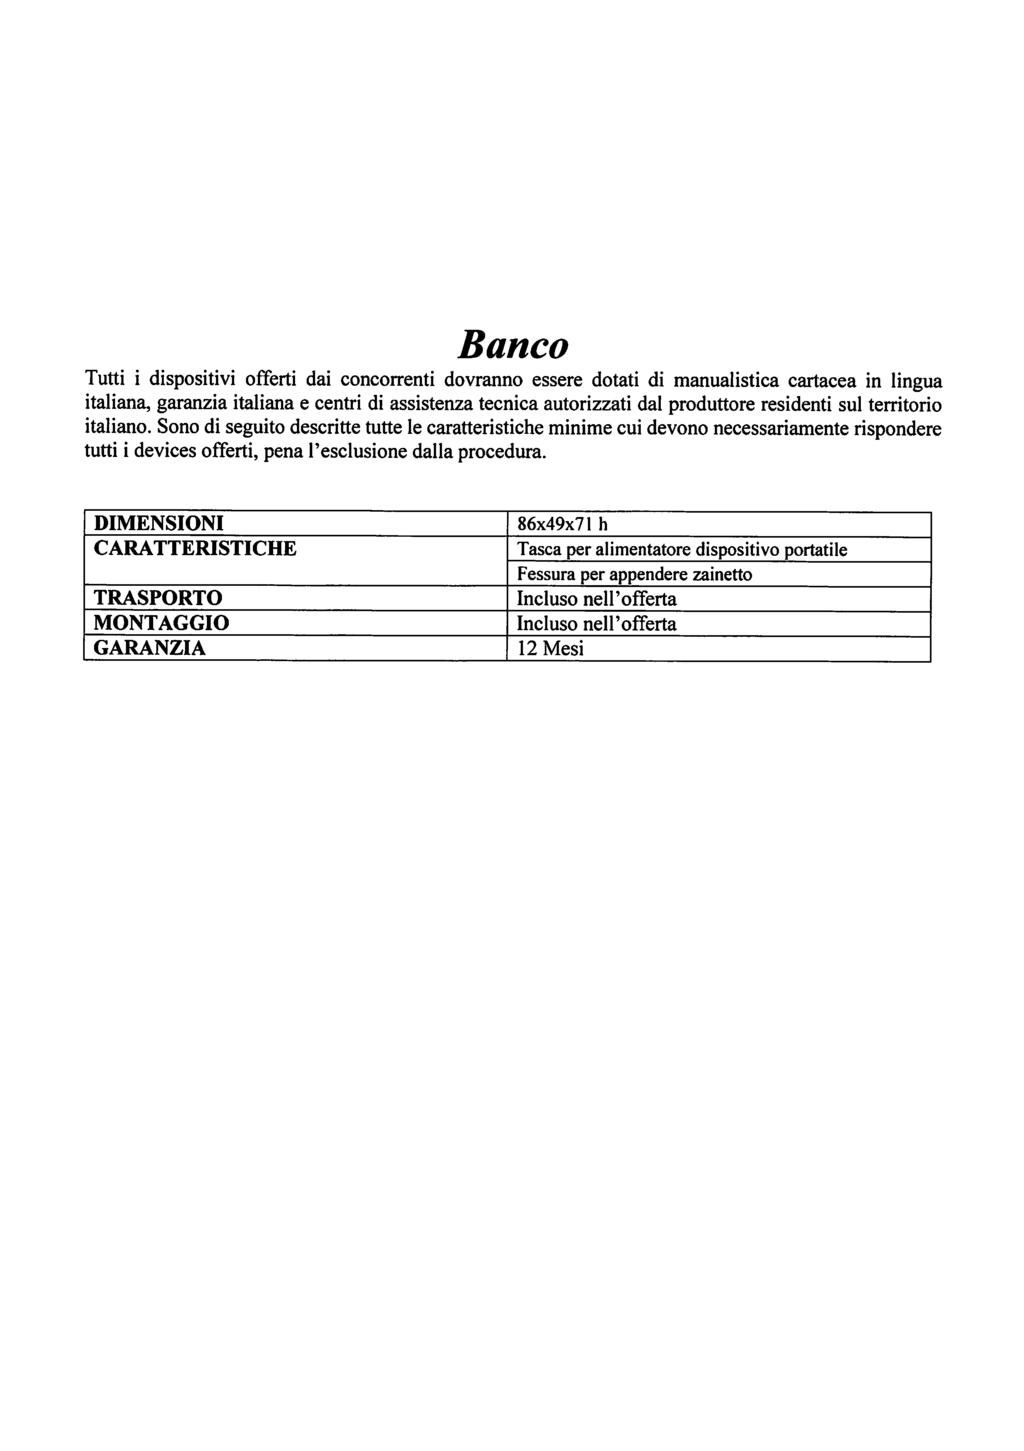 Banco DIMENSIONI CARATTERISTICHE TRASPORTO MONTAGGIO GARANZIA 86x49x71 h Tasca per alimentatore